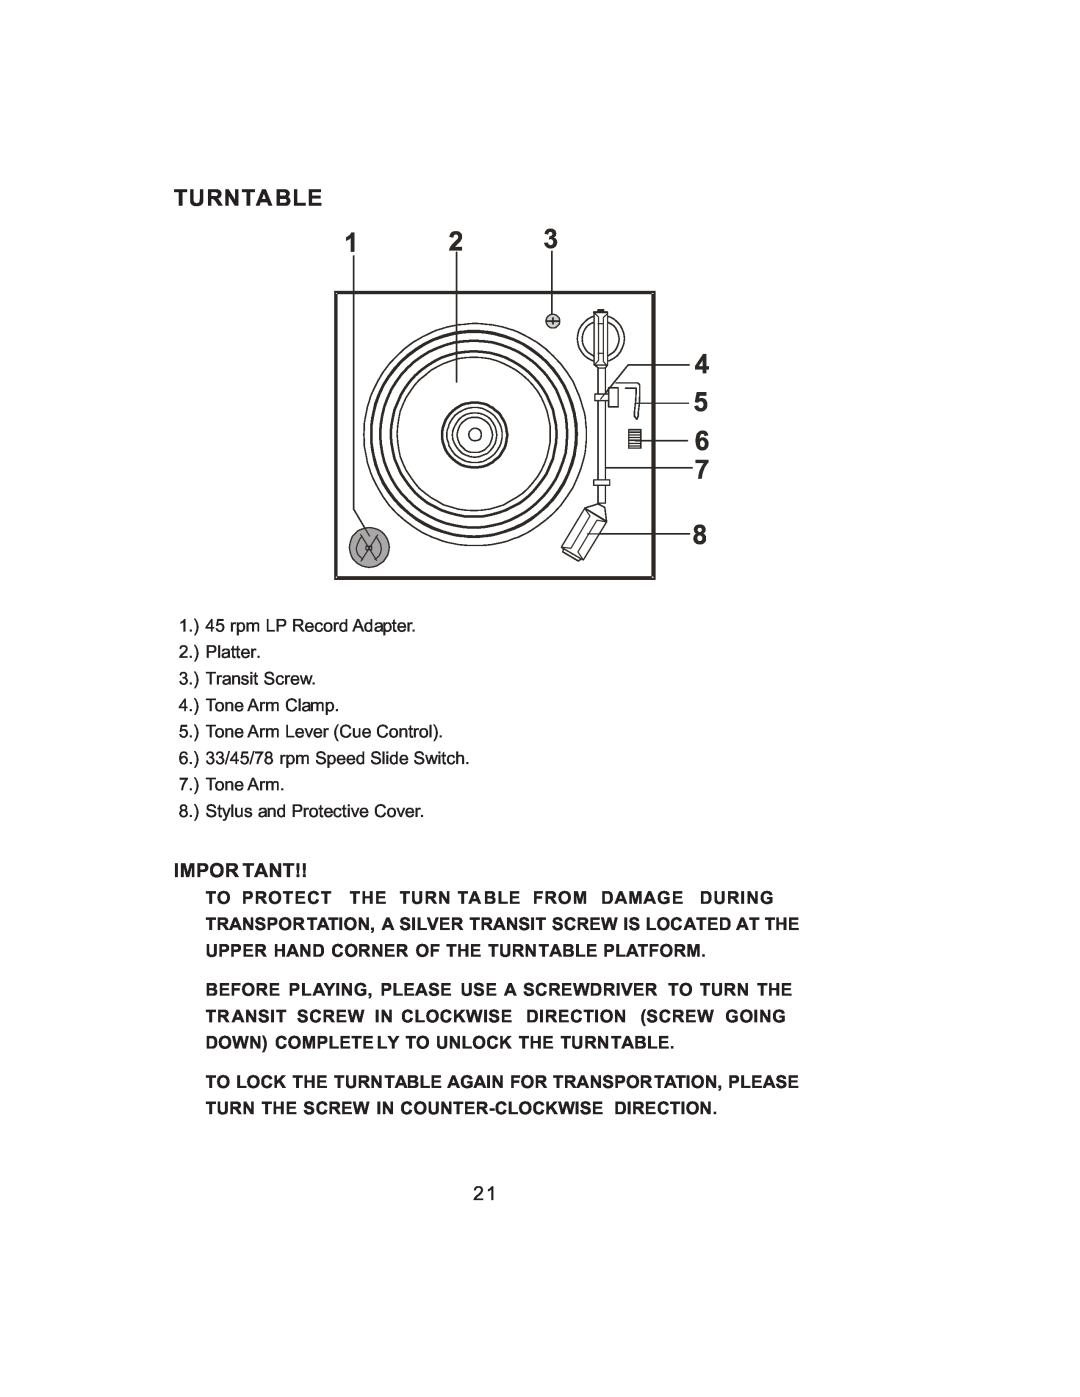 Jensen JMC-1000 manual Turnta Ble, Impor Tant 